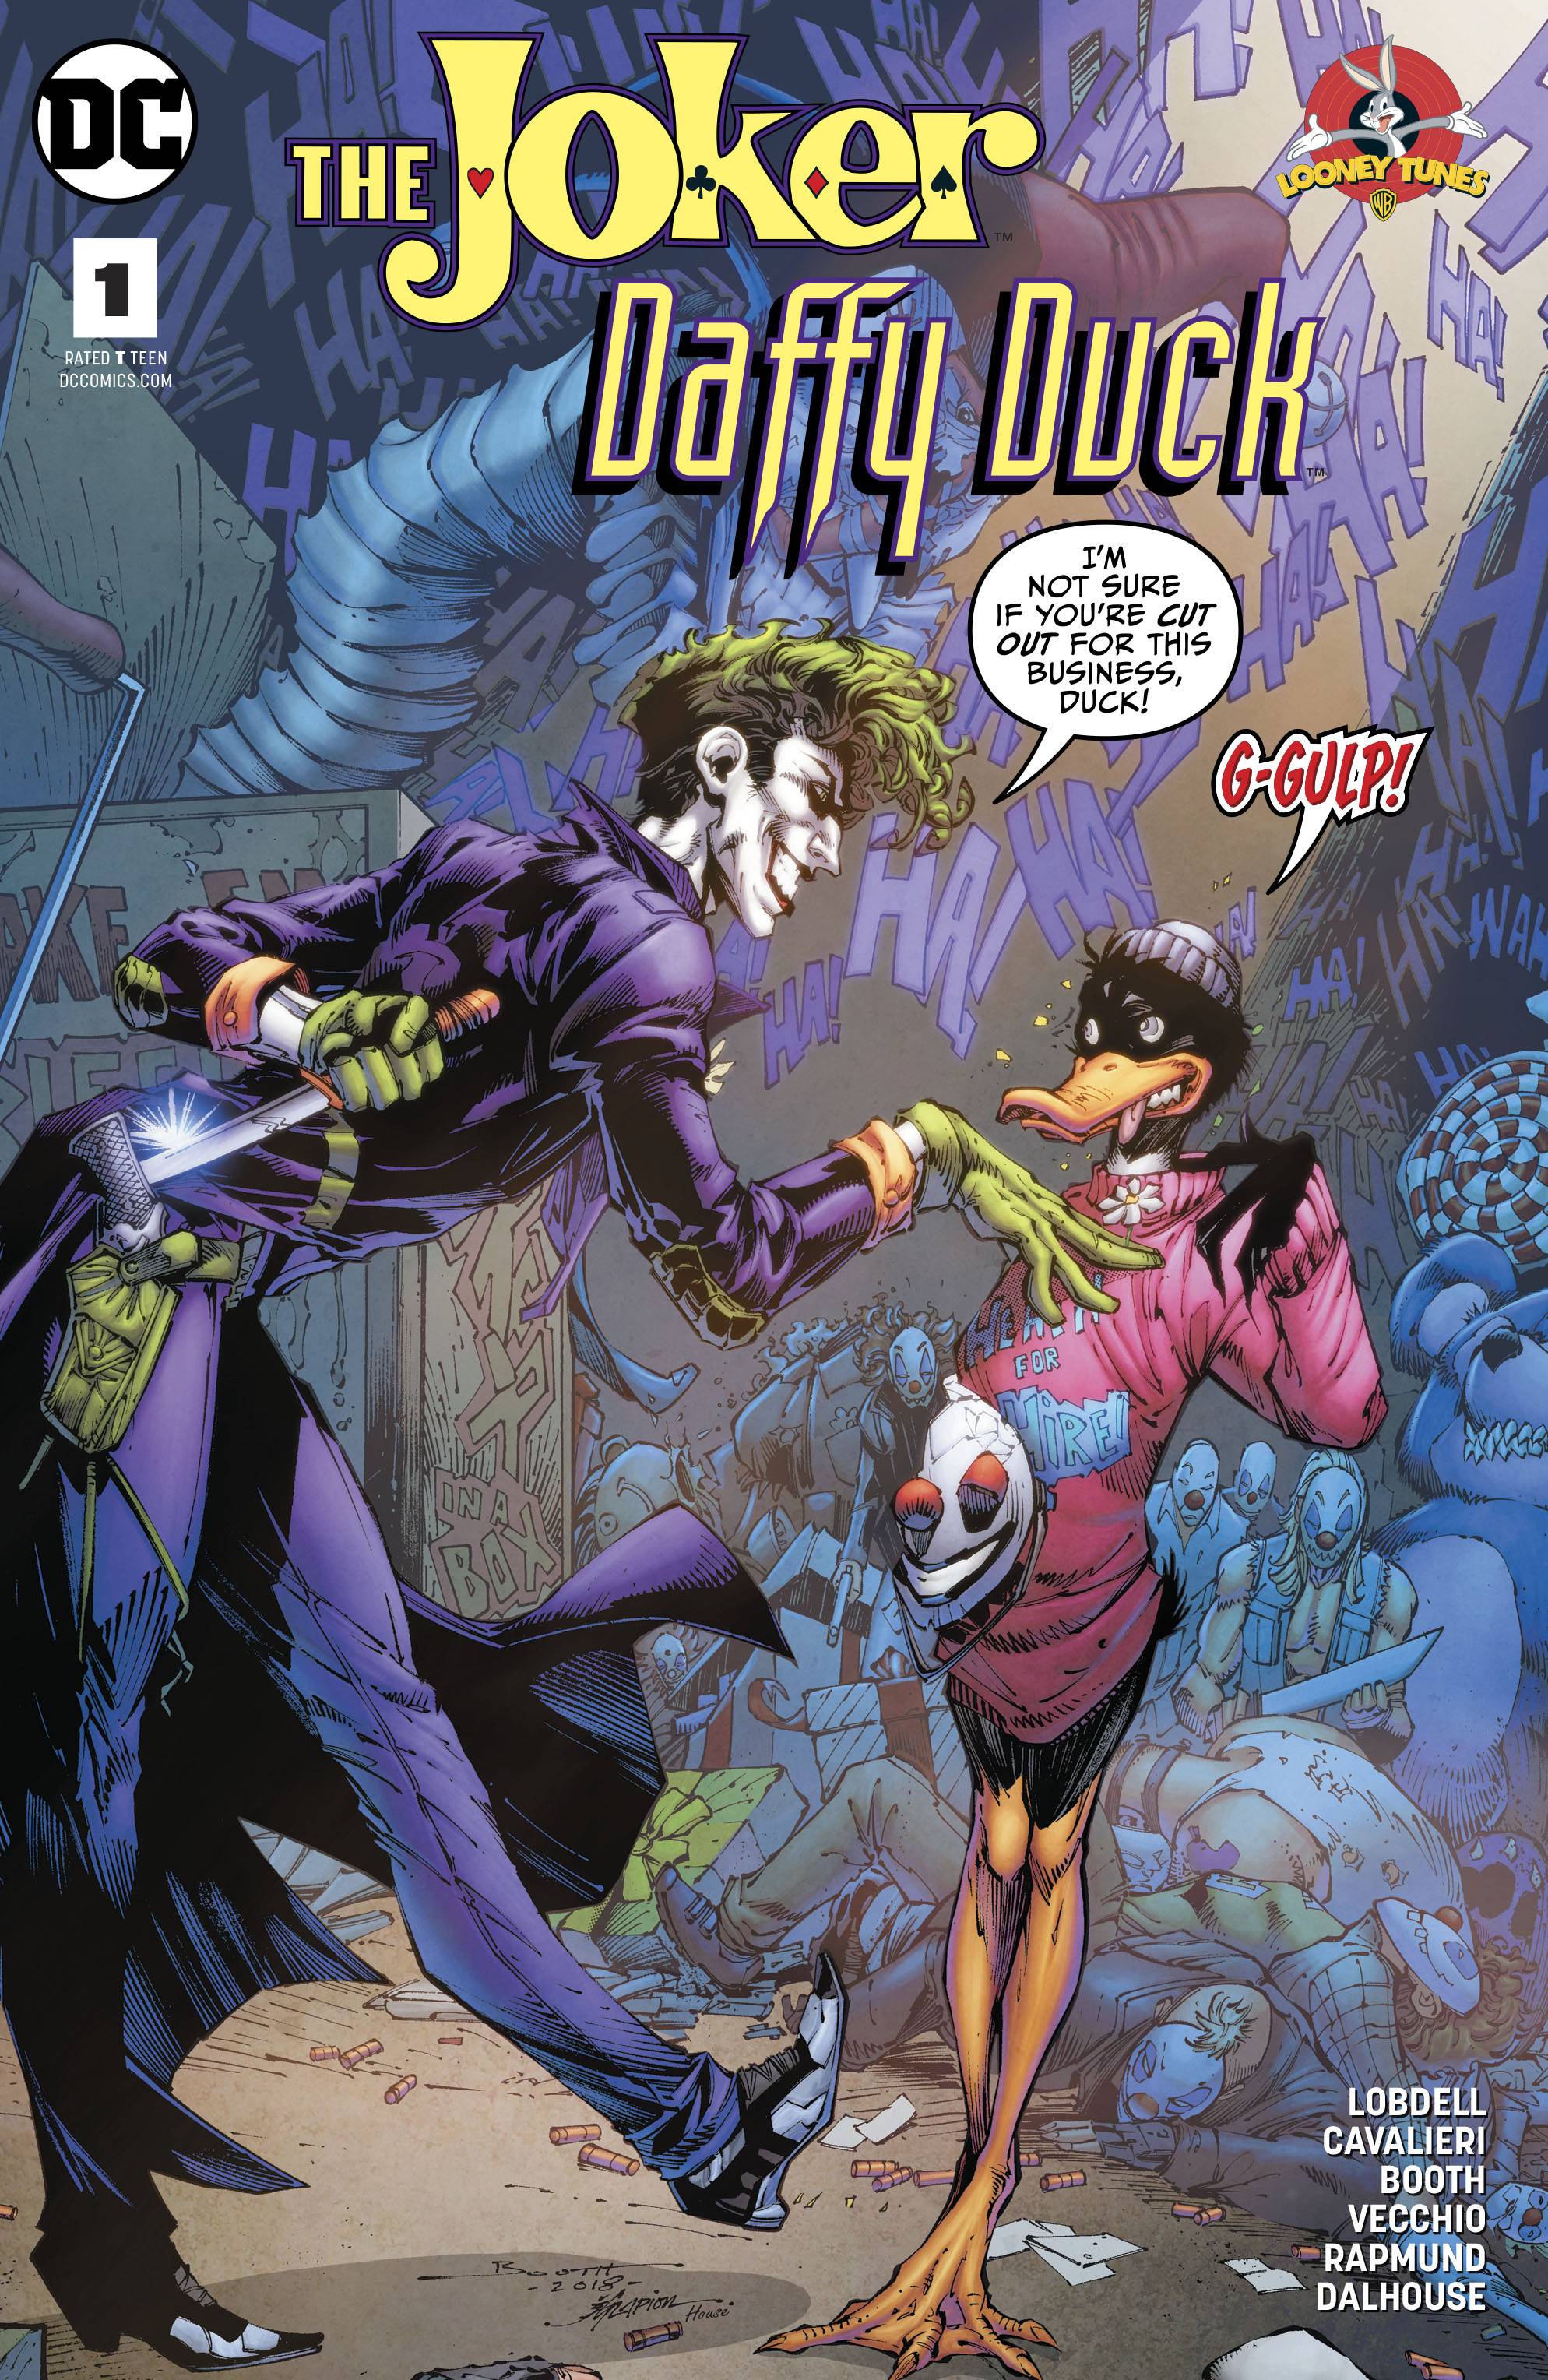 Joker Daffy Duck Special #1